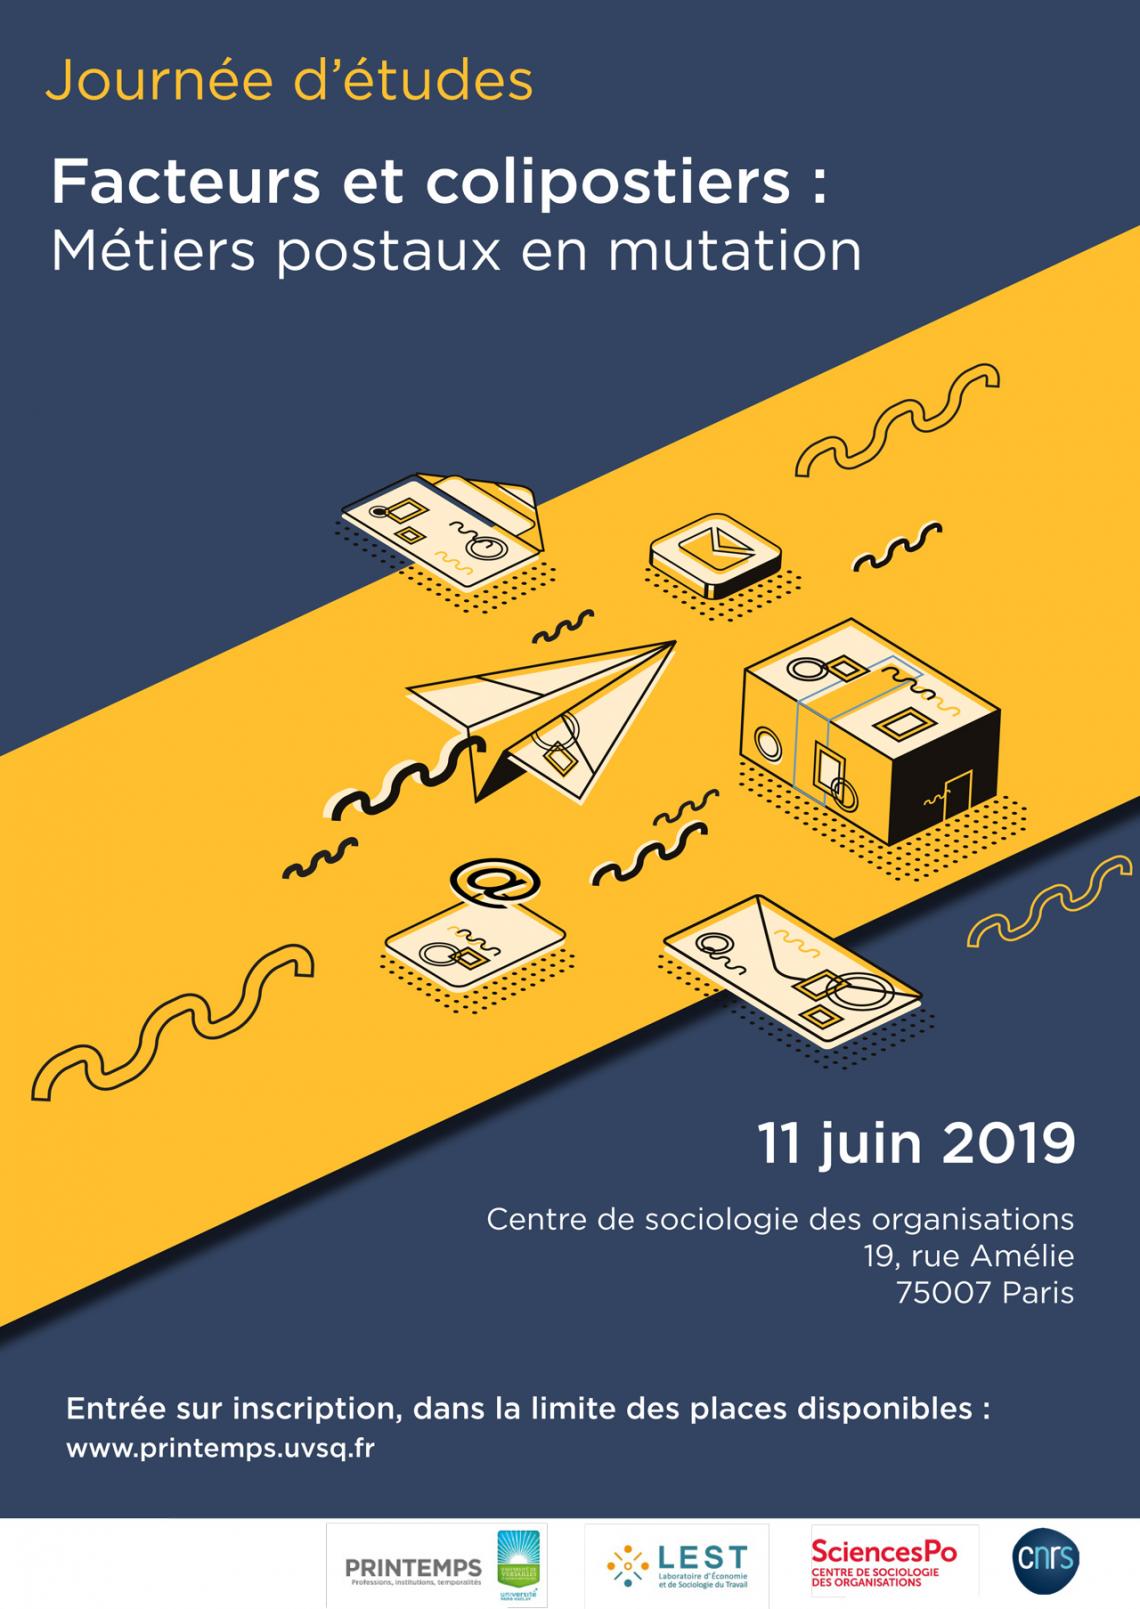 Journée d’études "Facteurs et colipostiers : métiers postaux en mutation"